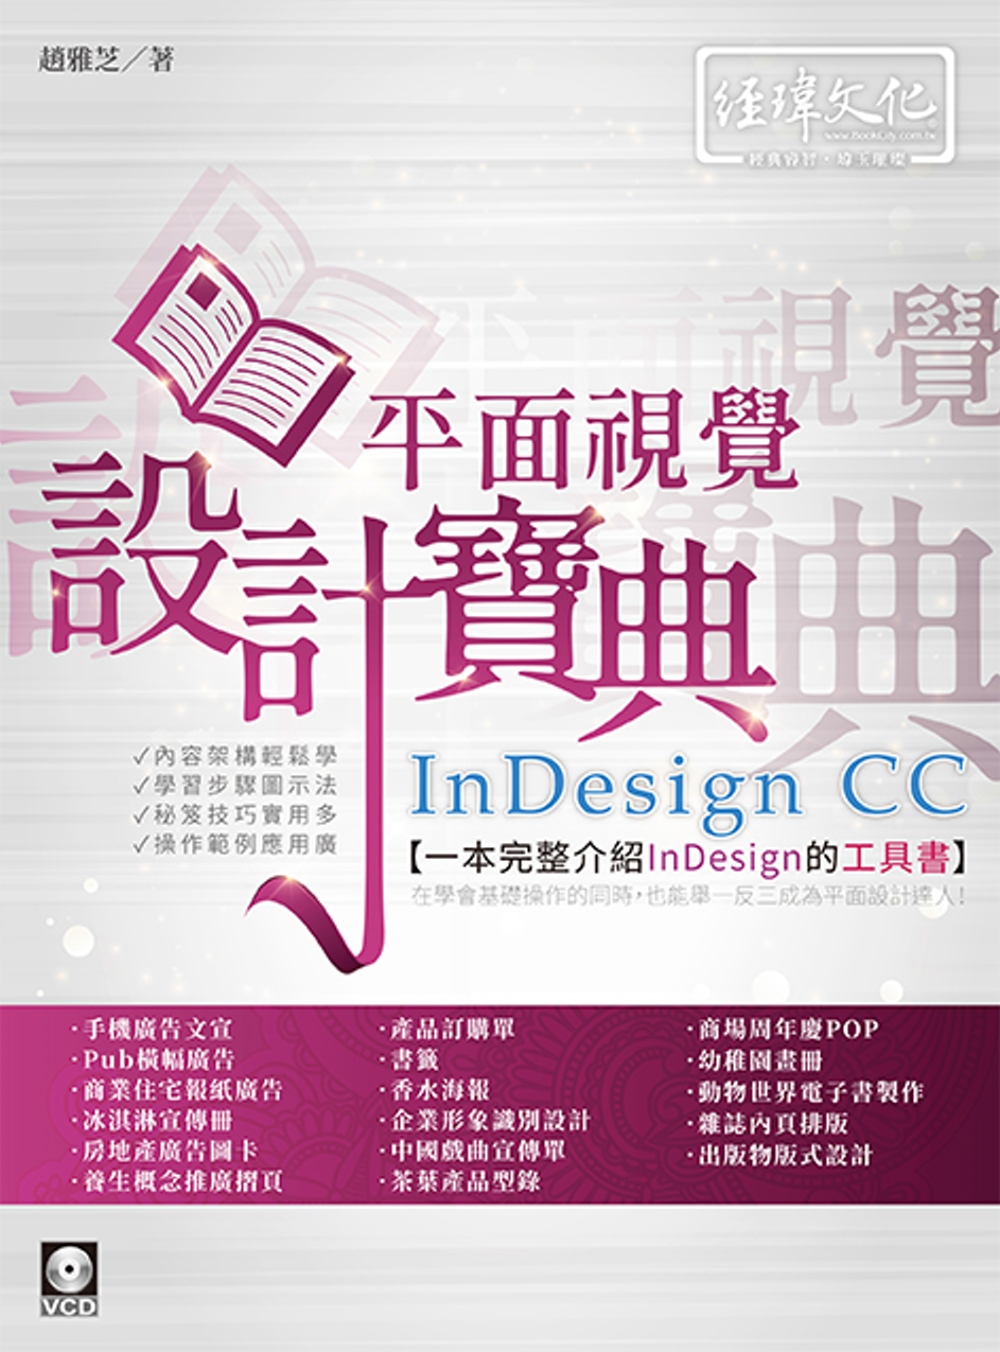 InDesign CC 平面視覺設計寶典